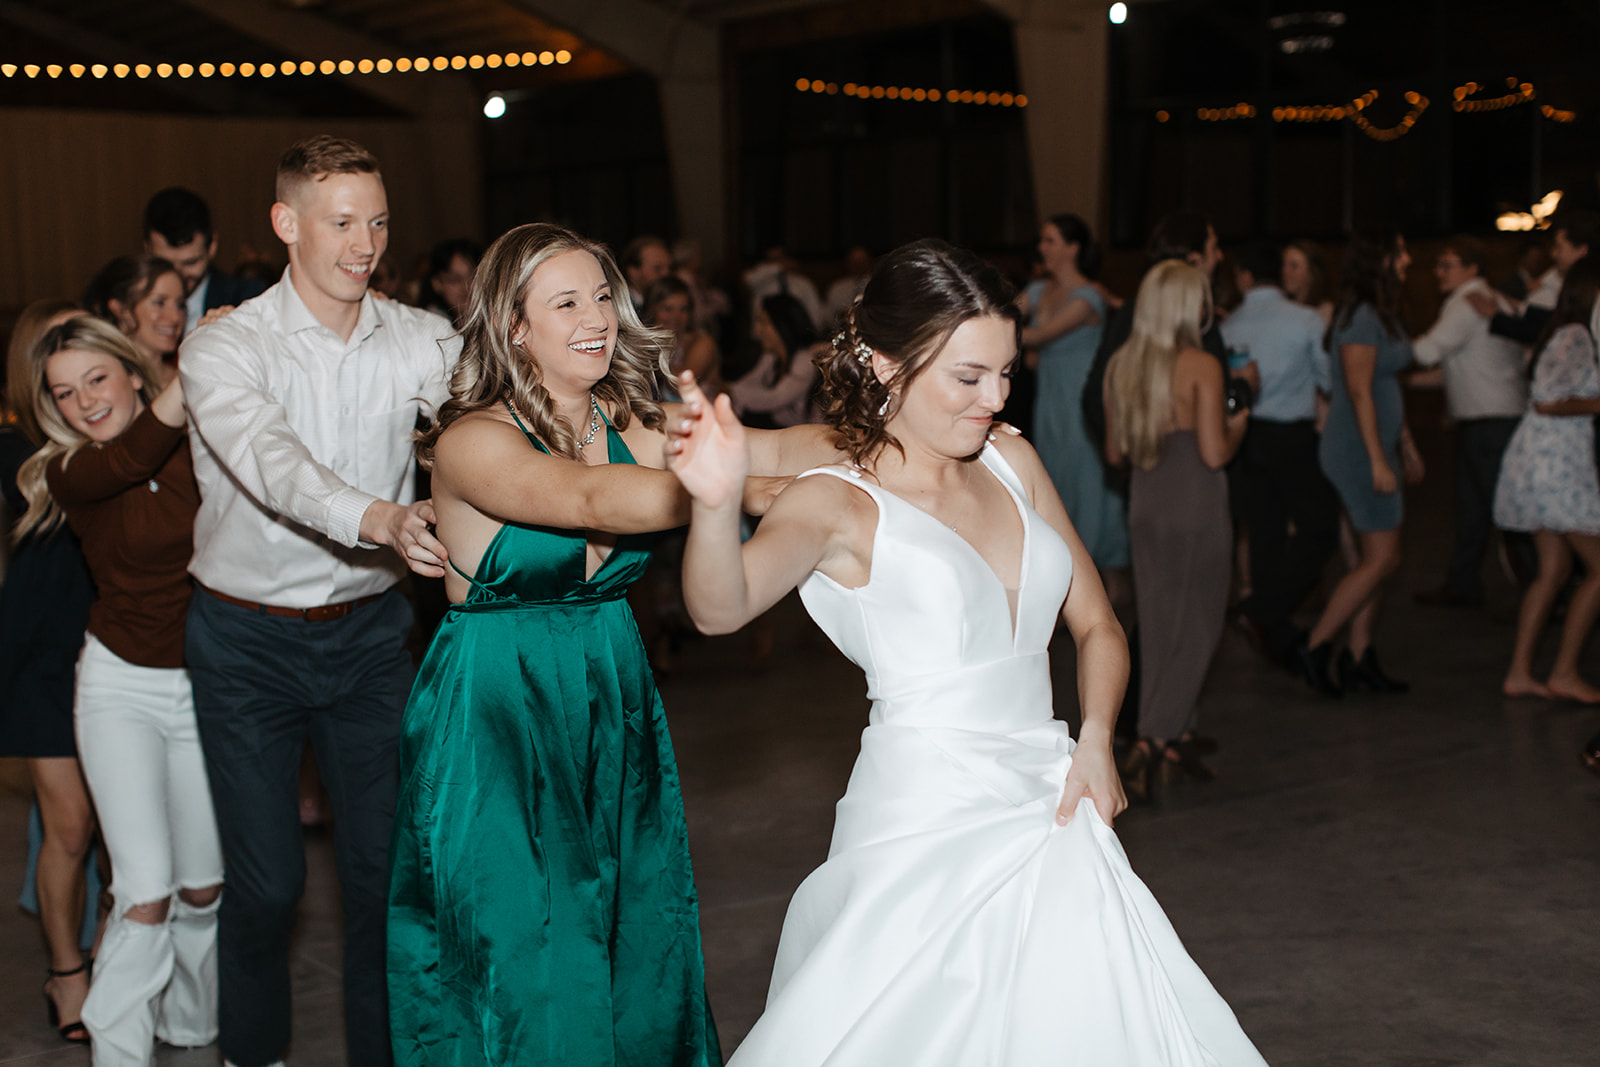 the bride leading a dance train